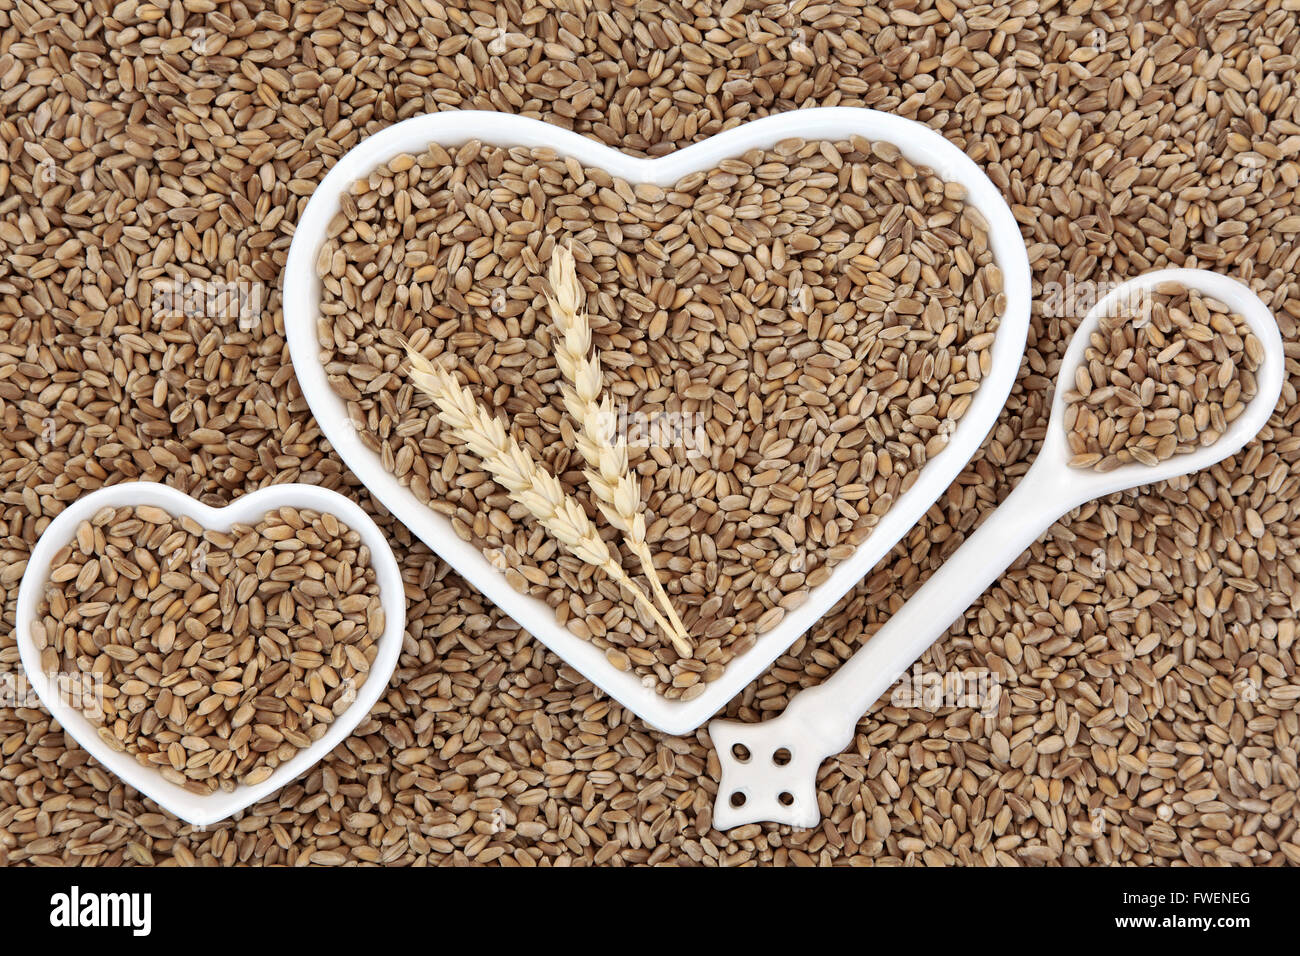 Le grain de blé dans l'alimentation des bols en forme de coeur et cuillère en porcelaine avec les gaines formant un motif de fond. Banque D'Images